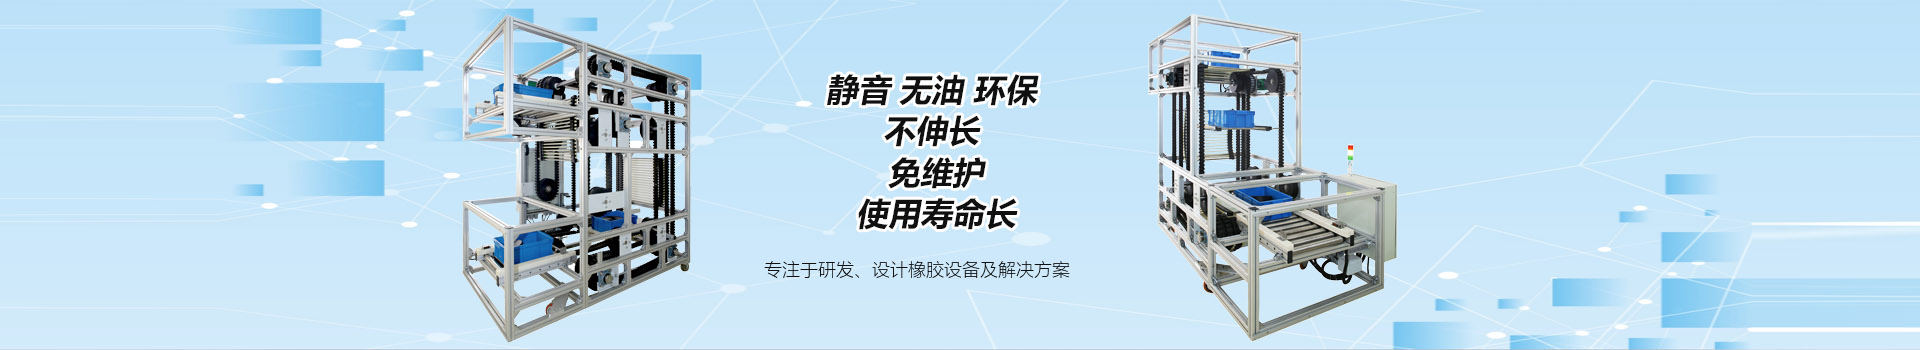 上海雷竞技raybet橡胶制品有限公司